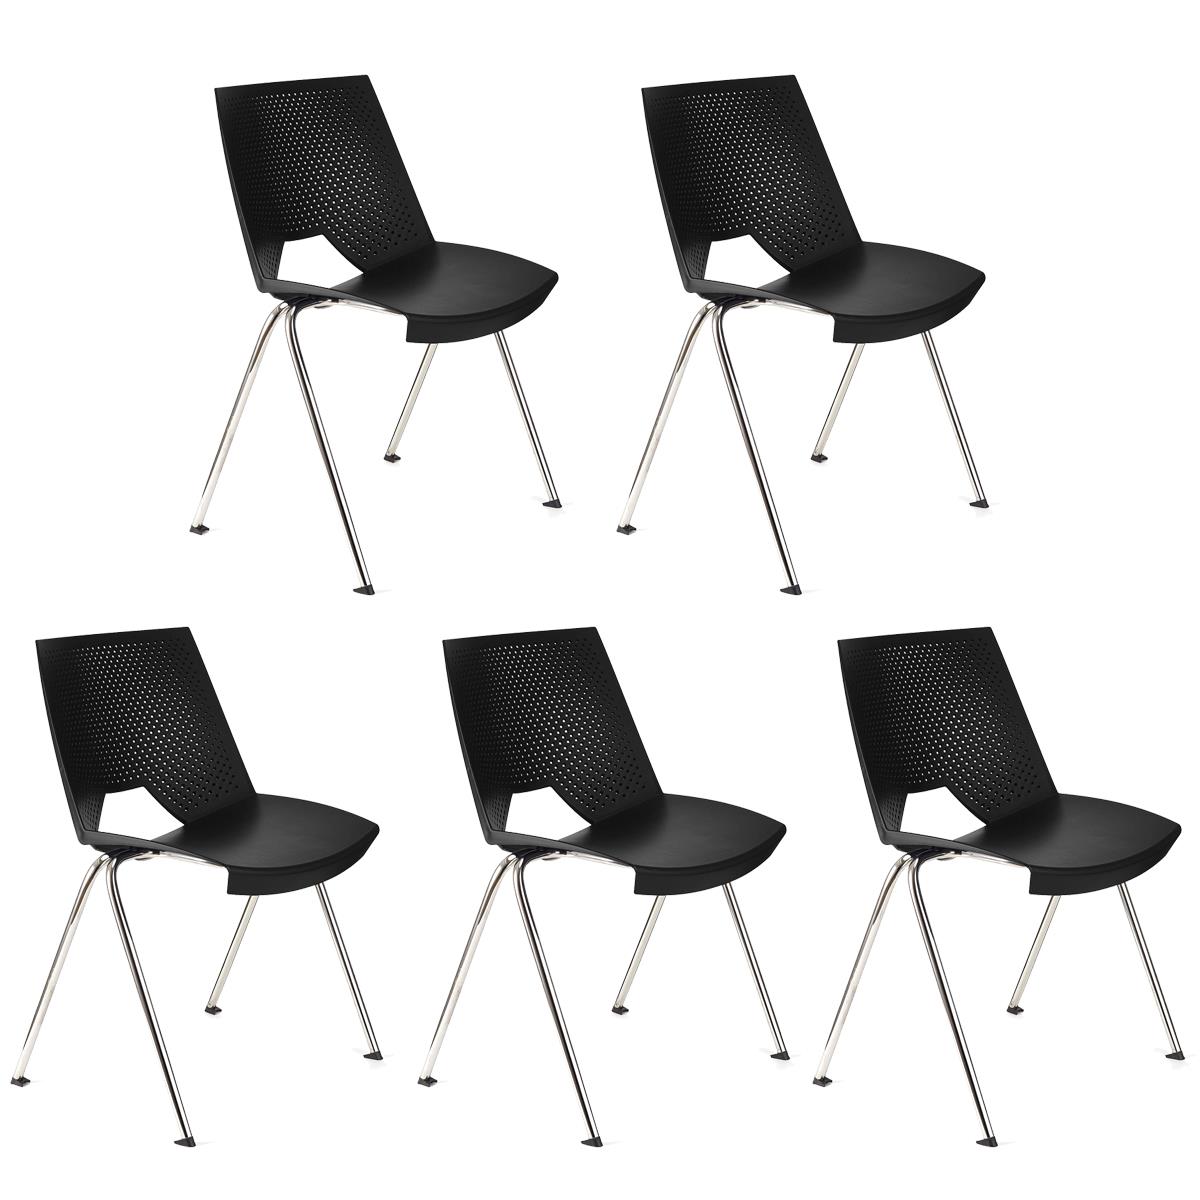 Lote 5 Cadeiras de Visita ENZO, Confortável e Prática, Empilhável, Cor Preto